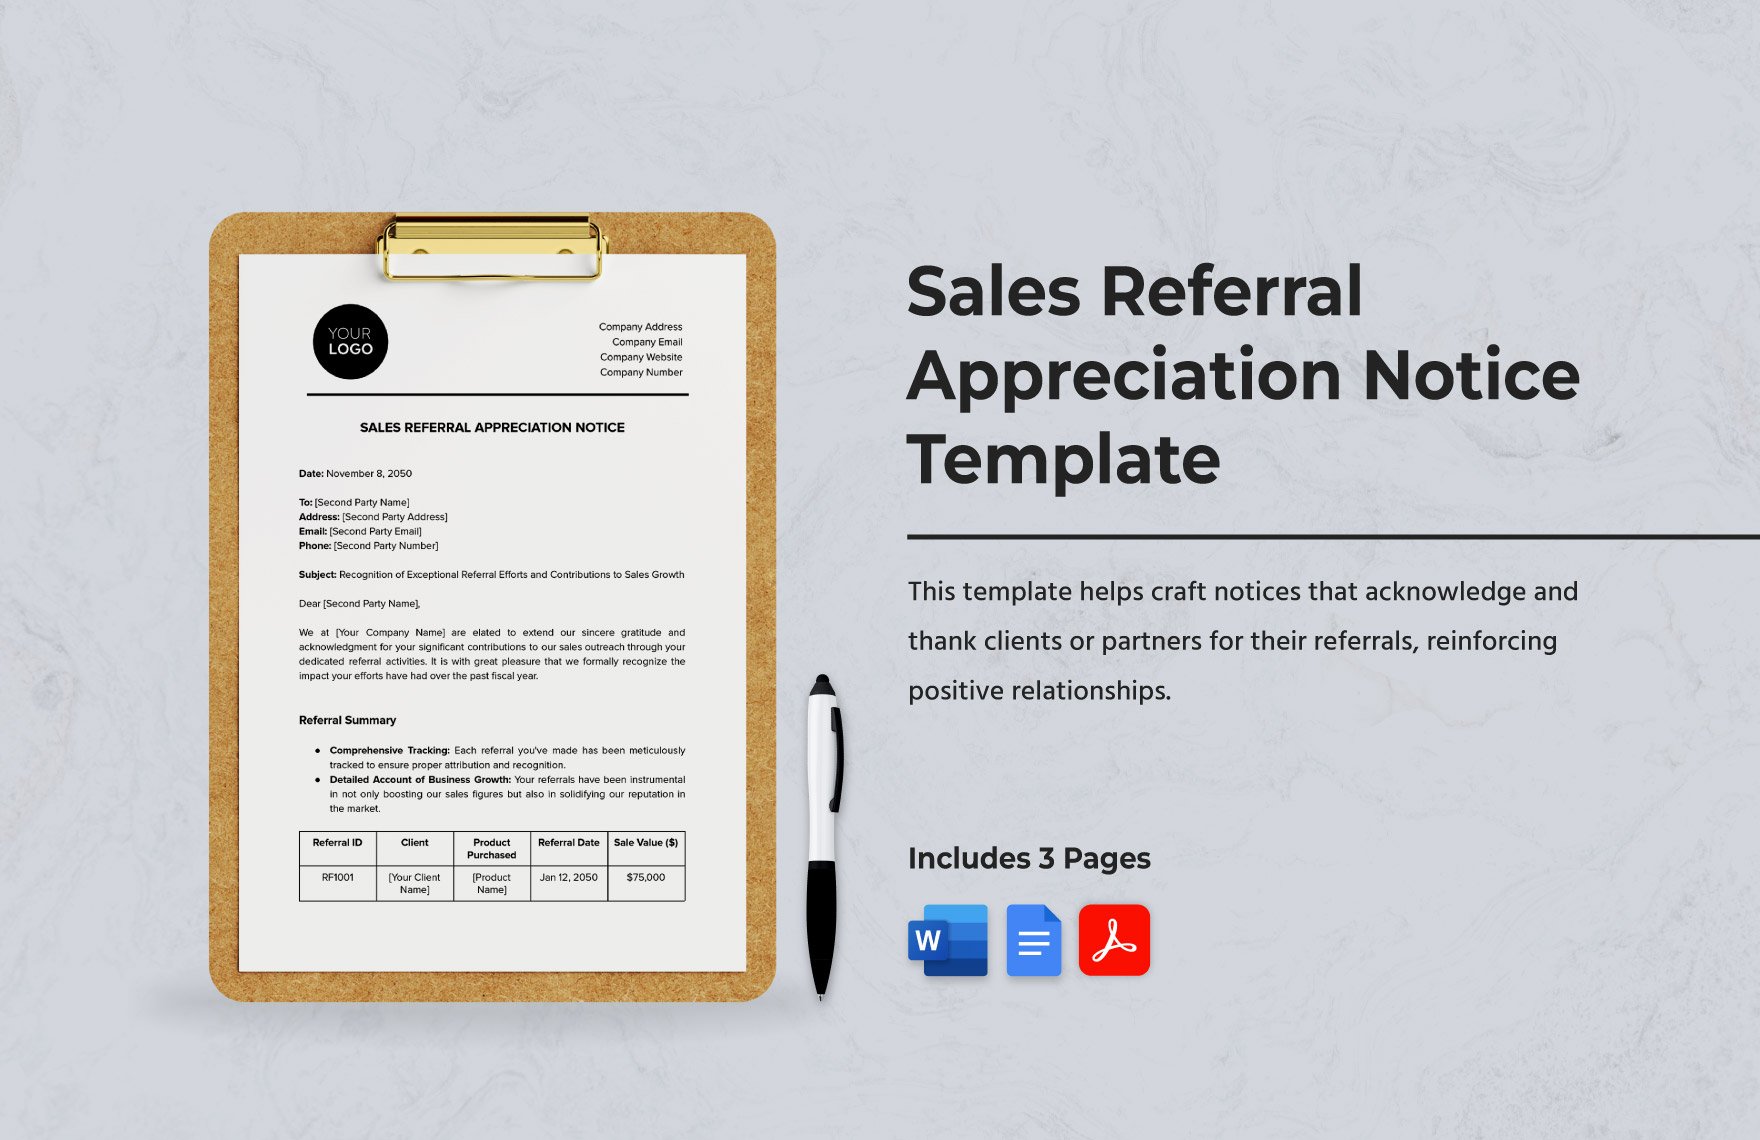 Sales Referral Appreciation Notice Template